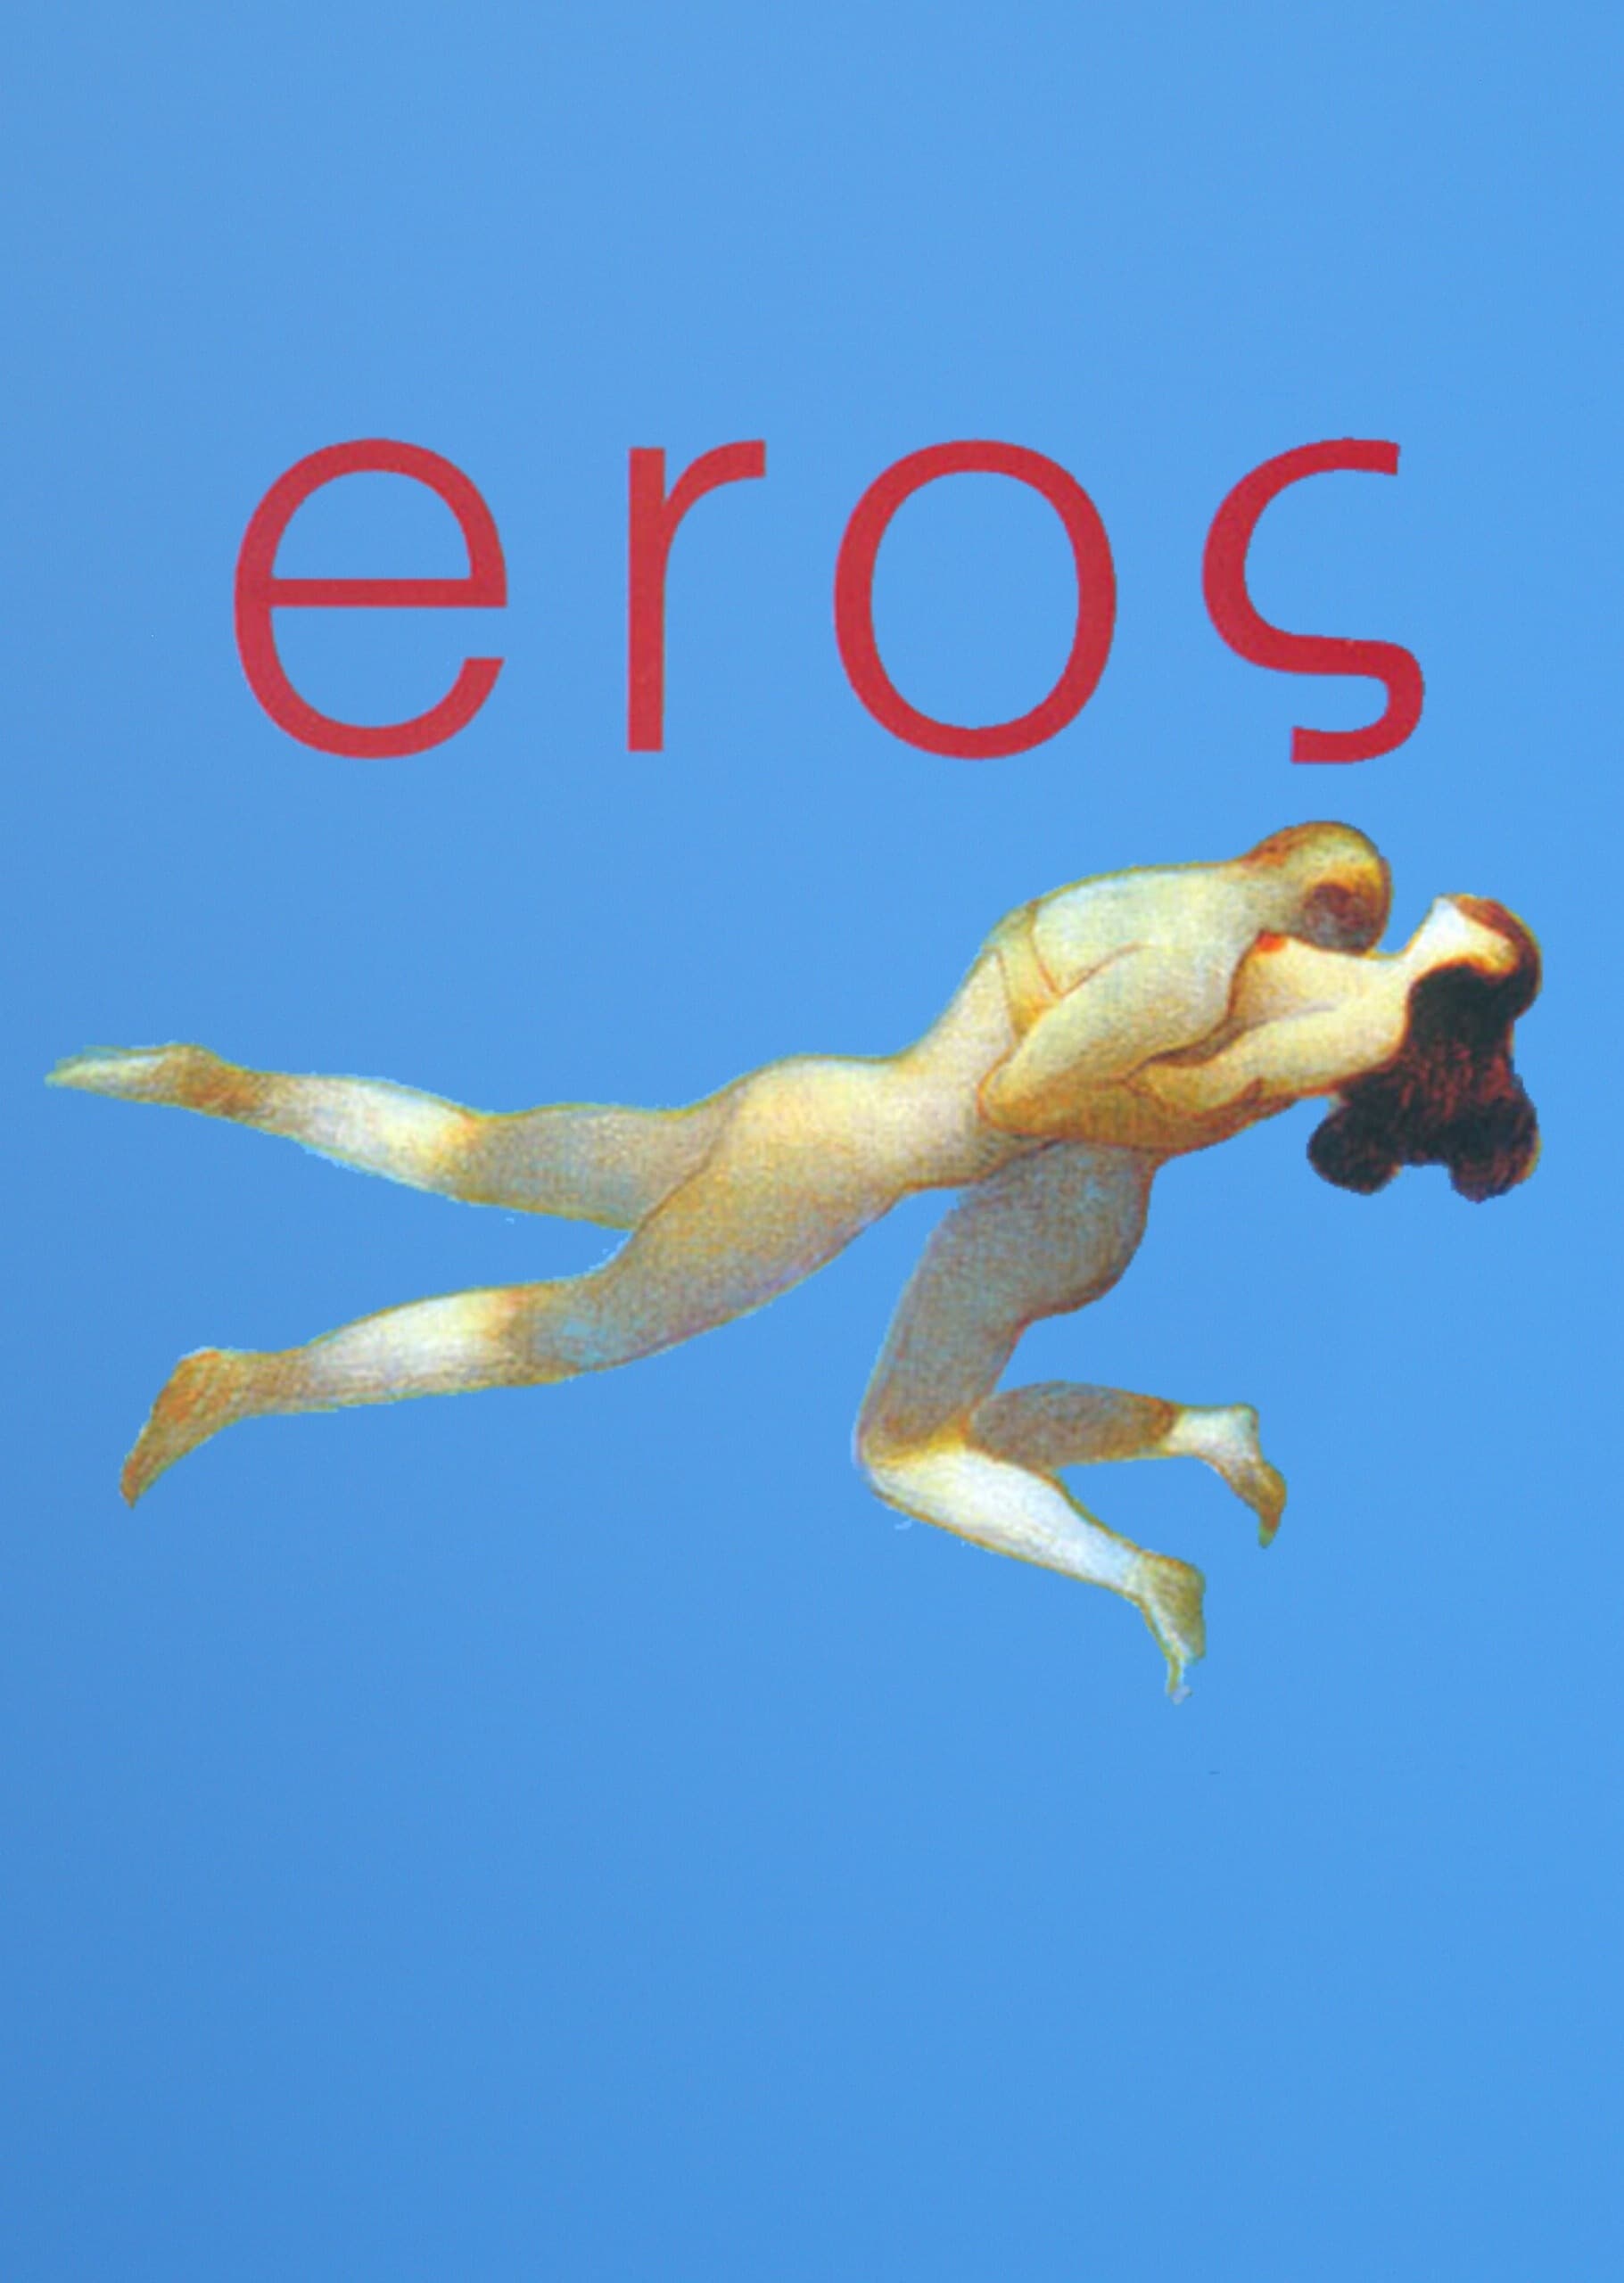 Plakat von "Eros"